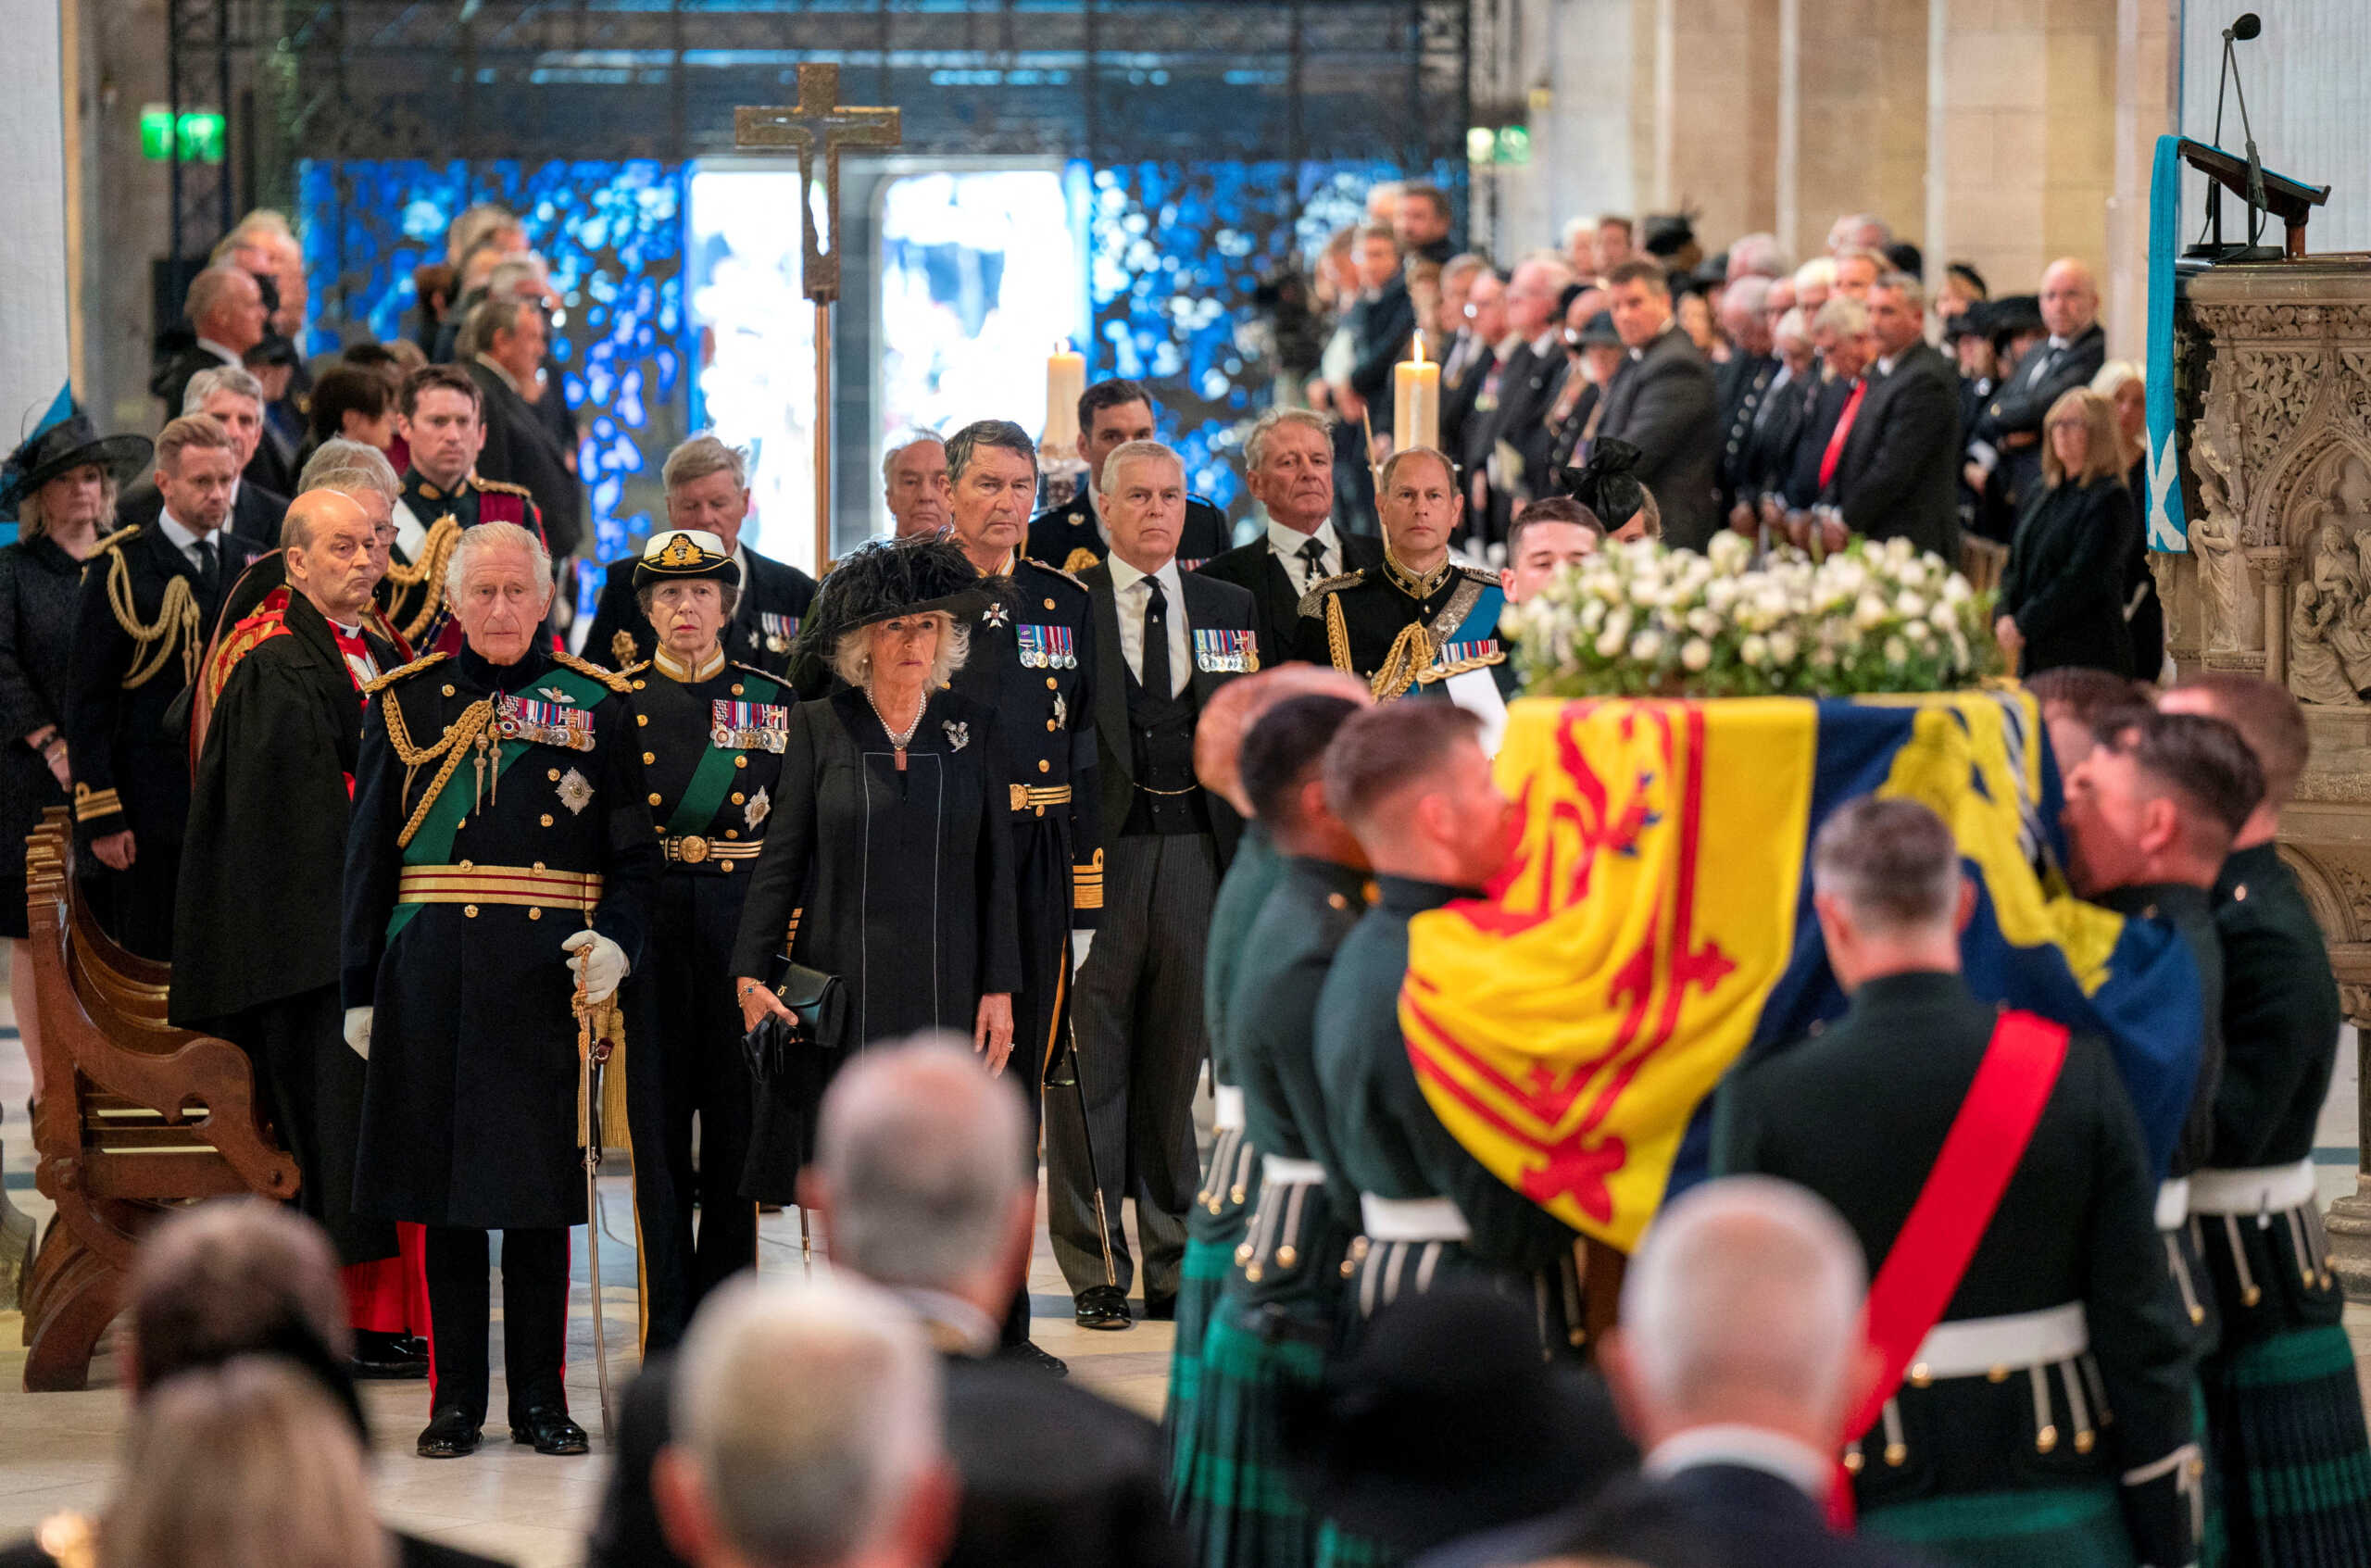 Βασίλισσα Ελισάβετ: Συνεχίζεται το λαϊκό προσκύνημα στη Σκωτία – Η σορός επιστρέφει στο Μπάκιγχαμ σήμερα (13/09)